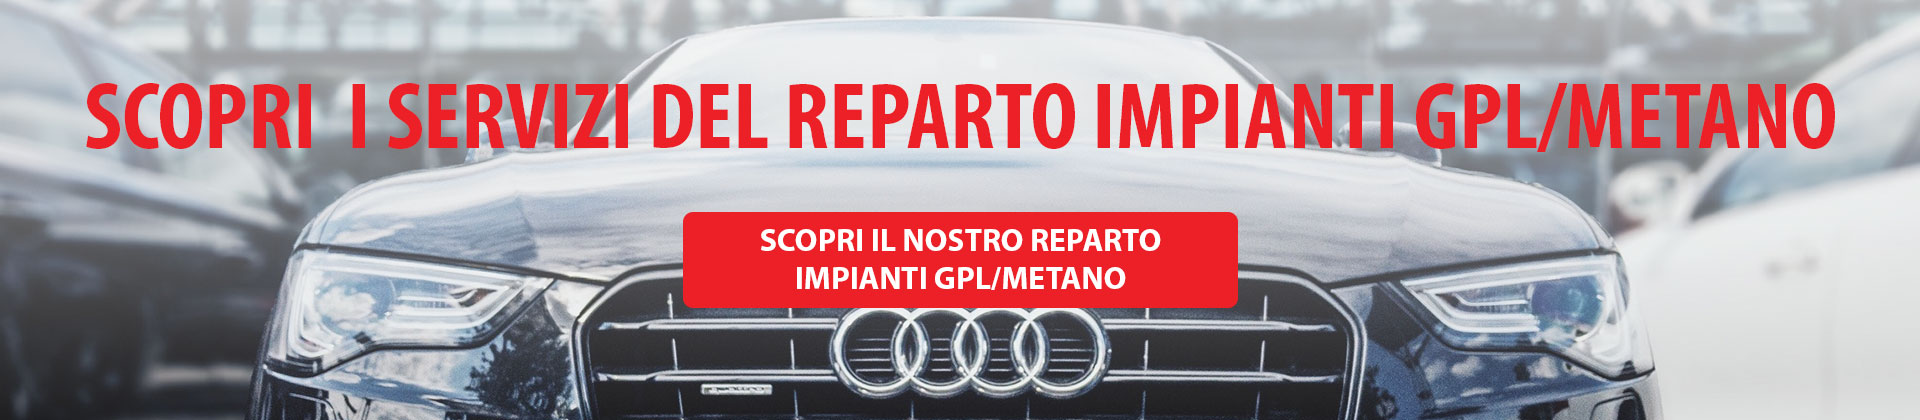 REPARTO-GPL-E-METANO